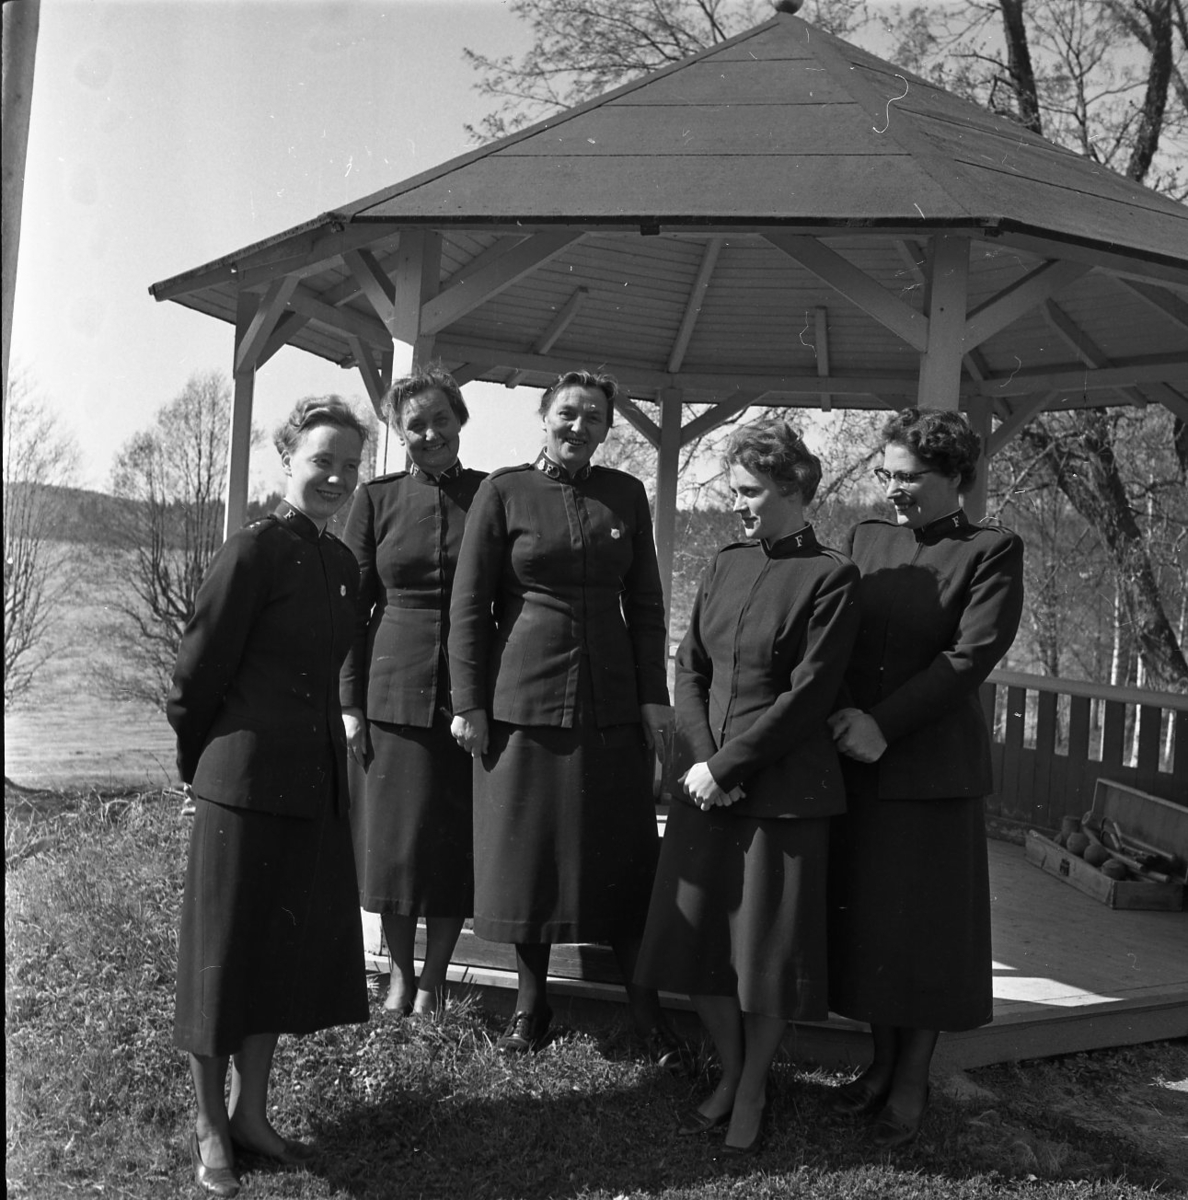 Fem kvinnor från frälsningarmén står uppställda för fotografering framför en paviljong.